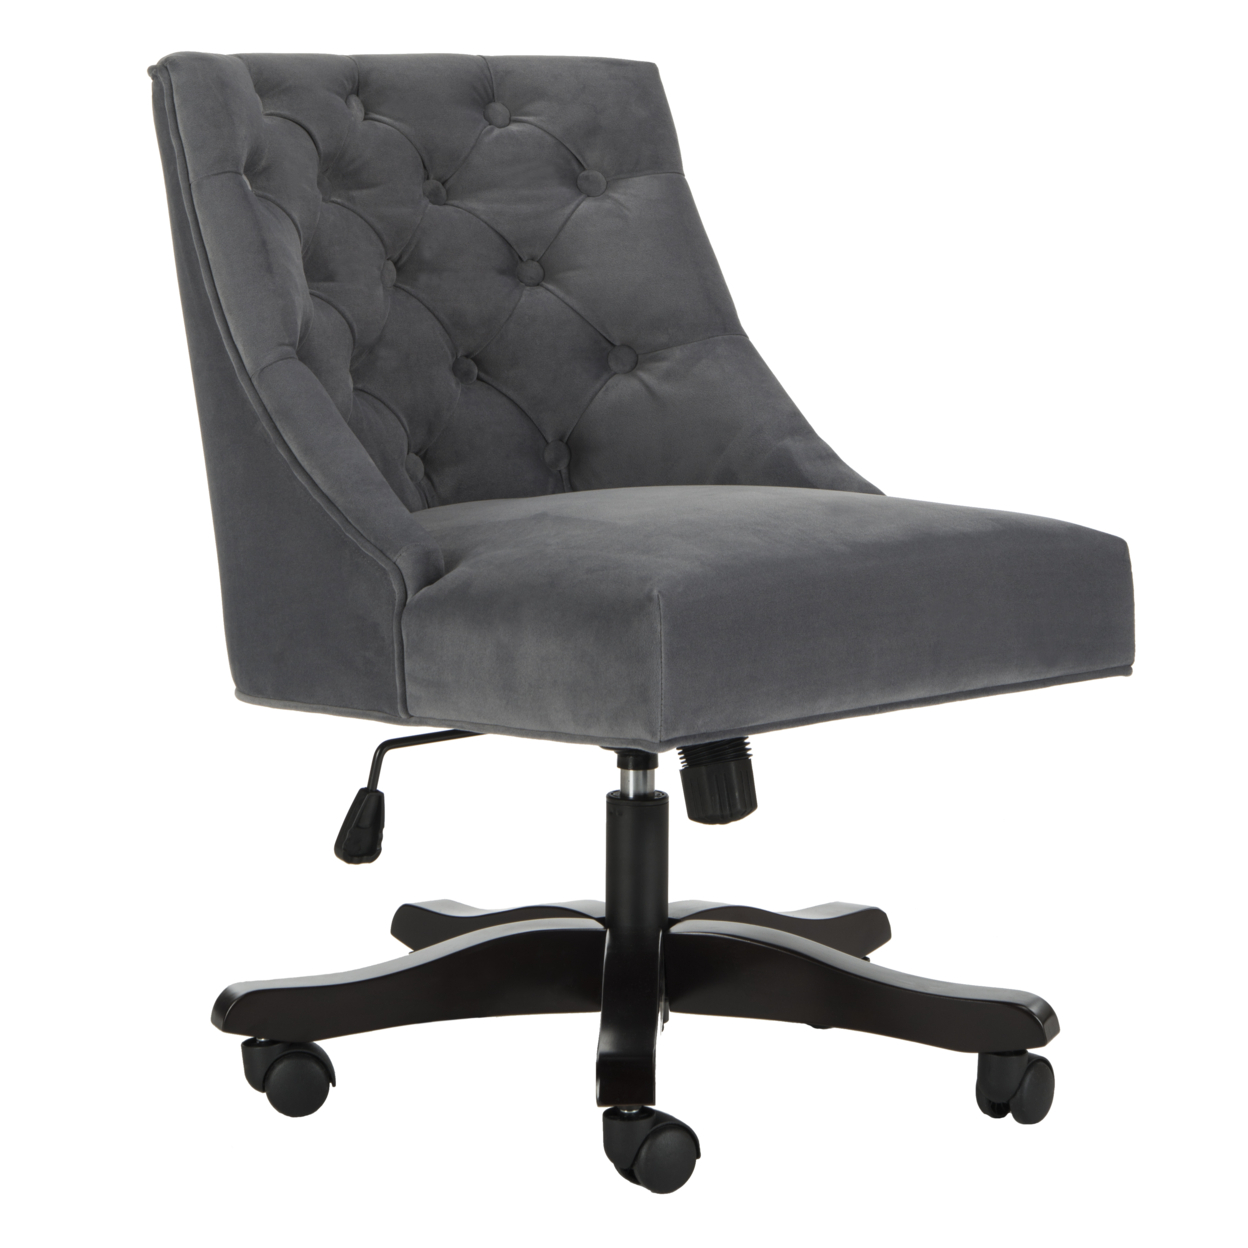 SAFAVIEH Soho Tufted Velvet Swivel Desk Chair Grey